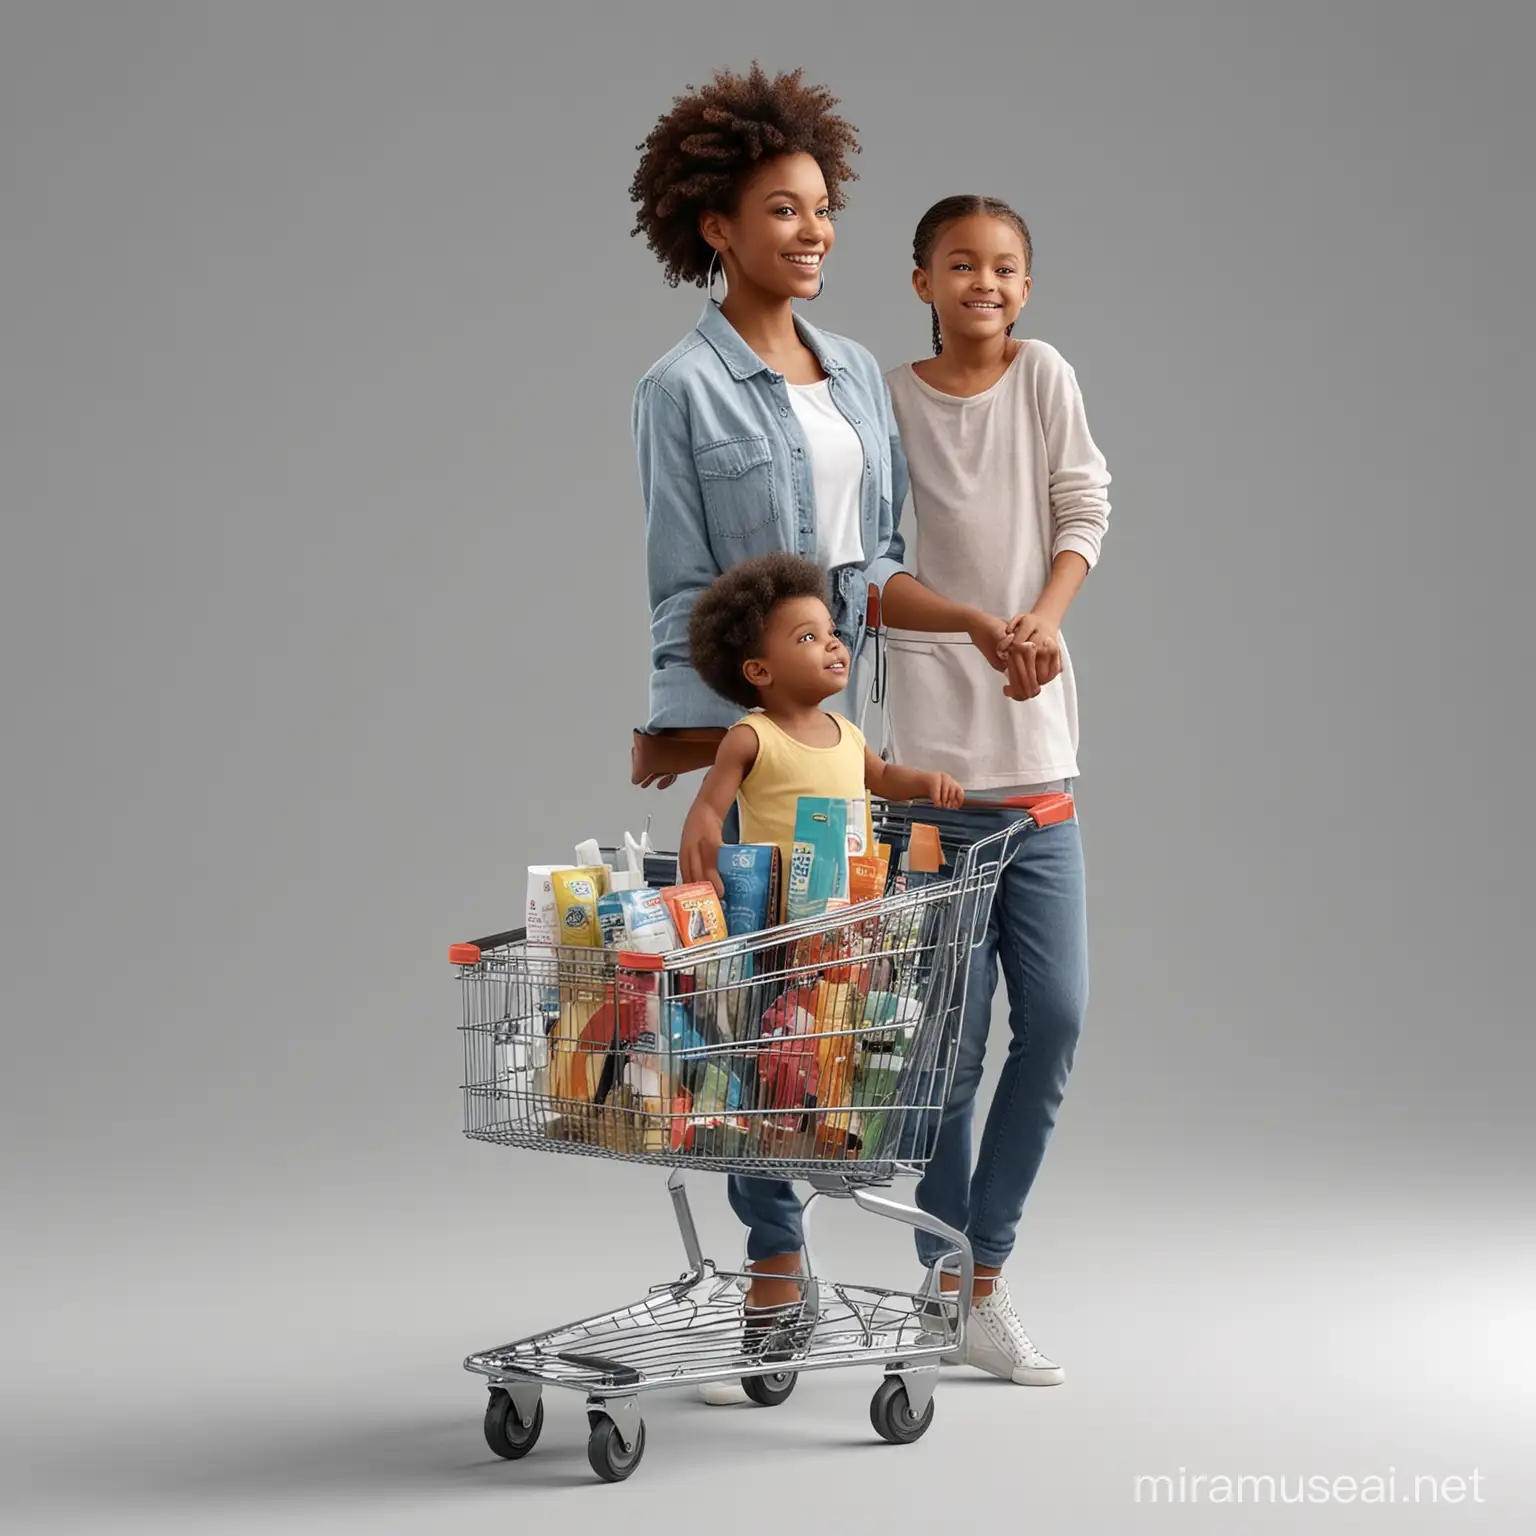 vista de corpo inteiro , mulher negra jovem realistas, vestindo roupas do século 21 , feliz olhando para a esquerda , empurrando carrinho de supermercado cheio de produto, acompanhado pelo seu filho,